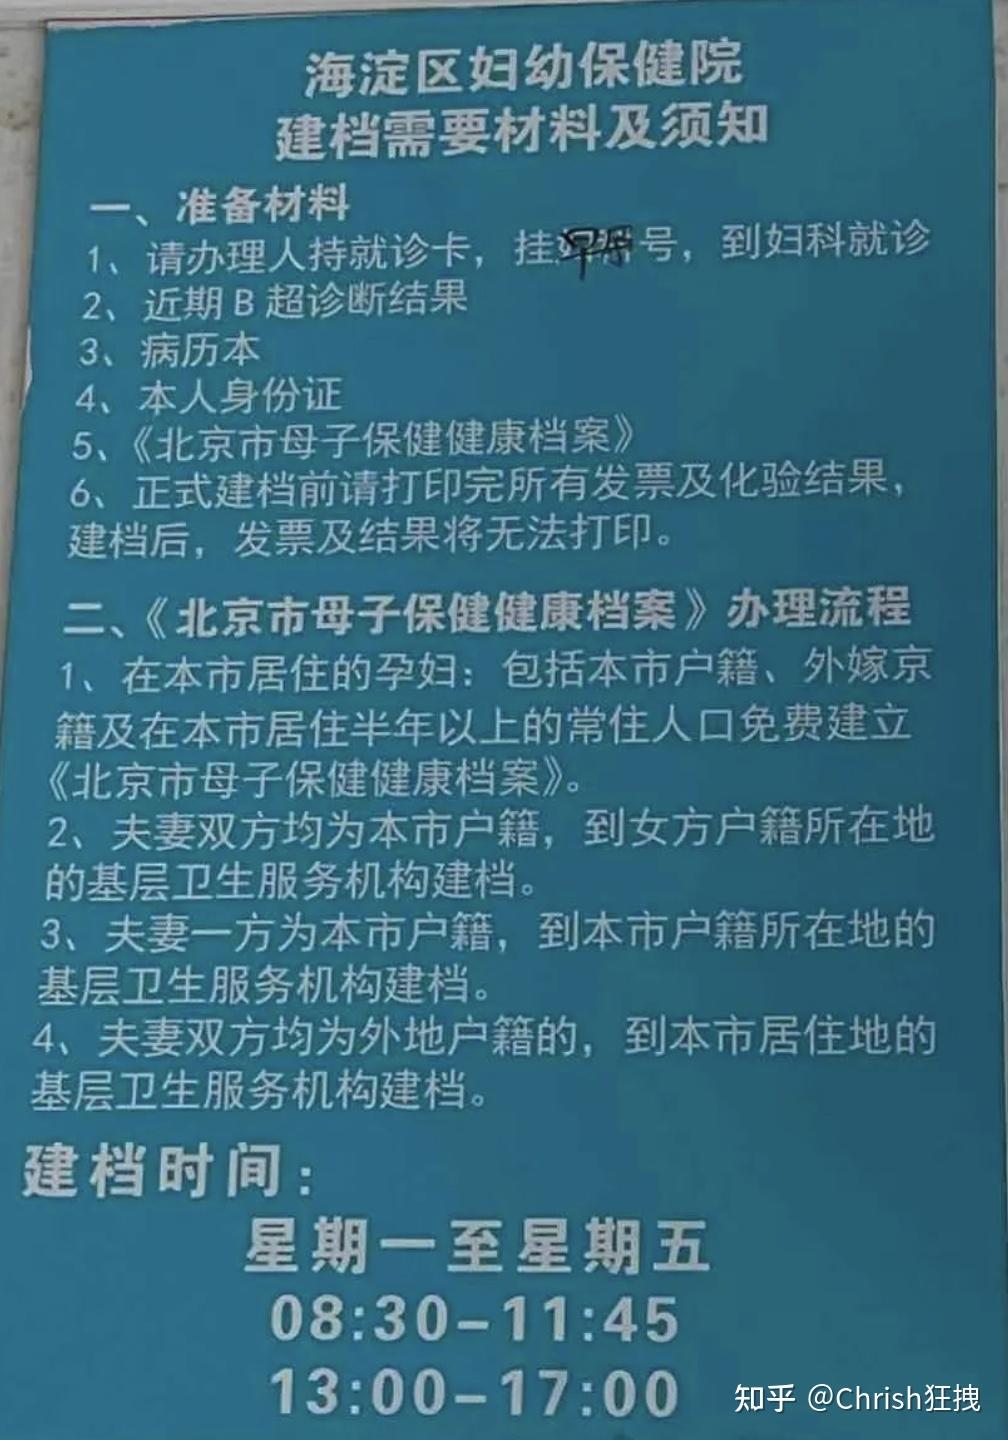 包含天津市心理卫生专科医院解决挂号联系方式的词条